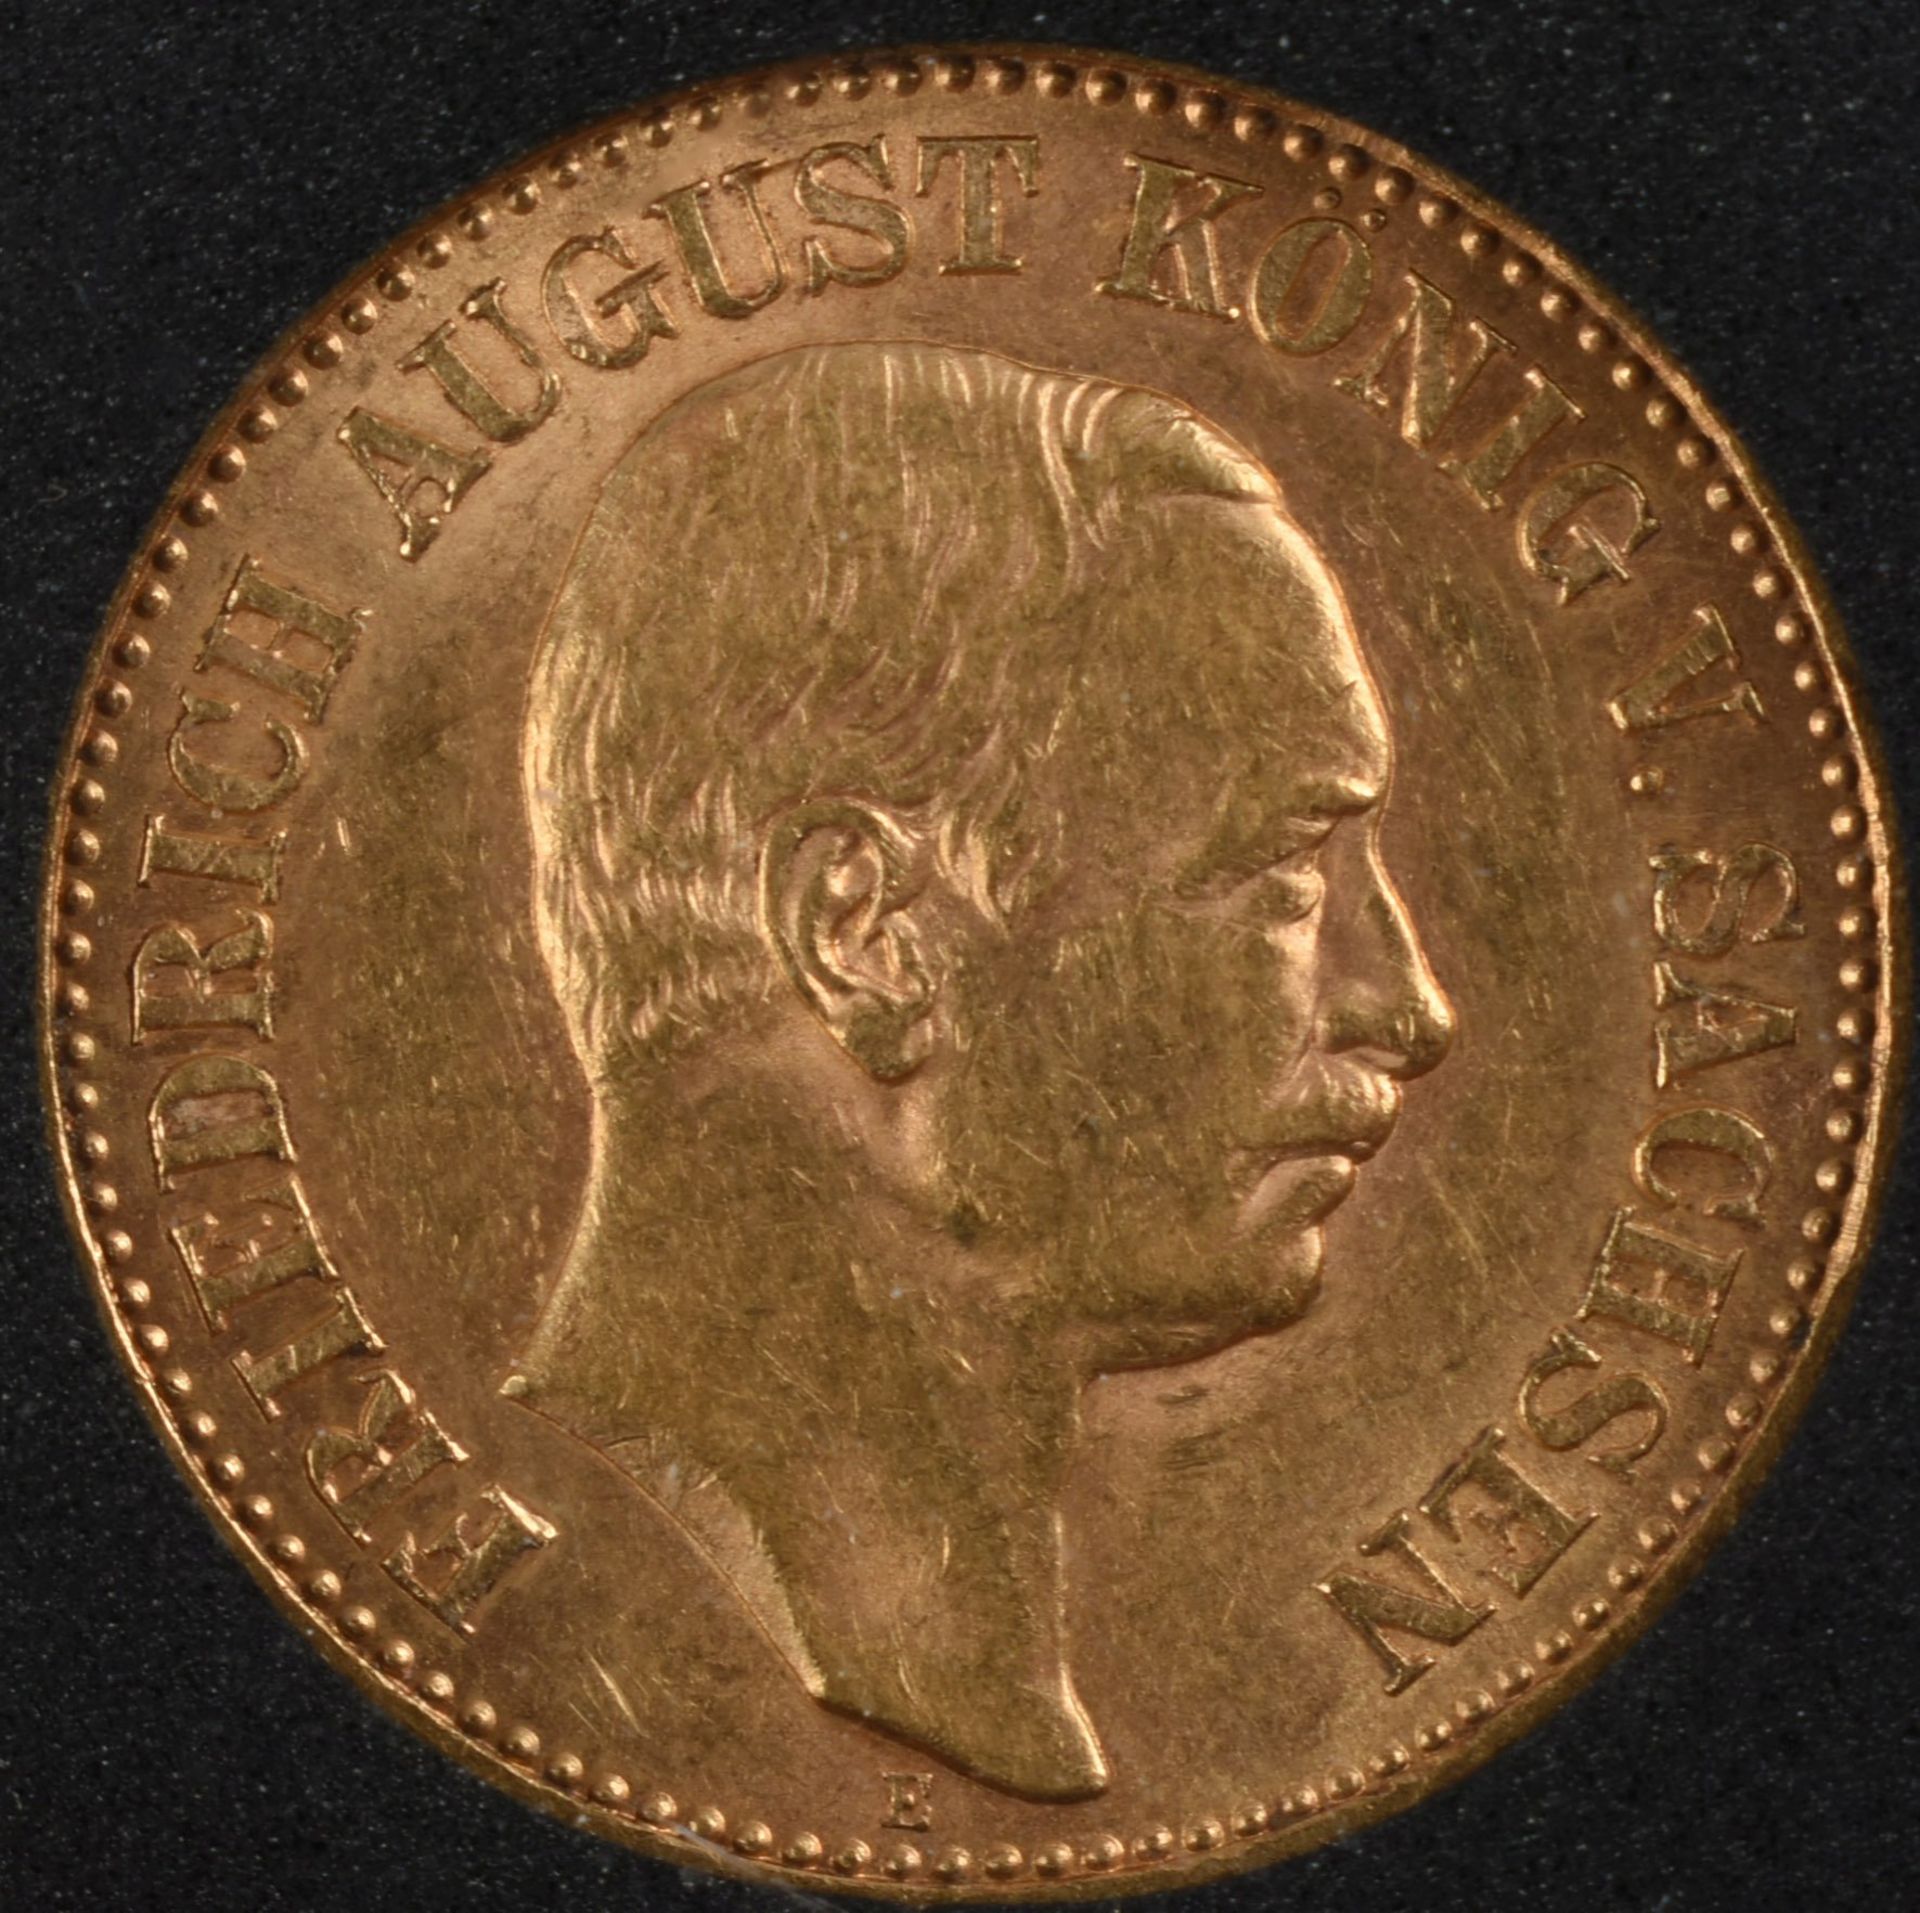 Goldmünze Sachsen 1905 20 Mark in Gold, 900/1000, 7,96 g, D ca. 22,5 mm, av. Friedrich August - Bild 2 aus 3